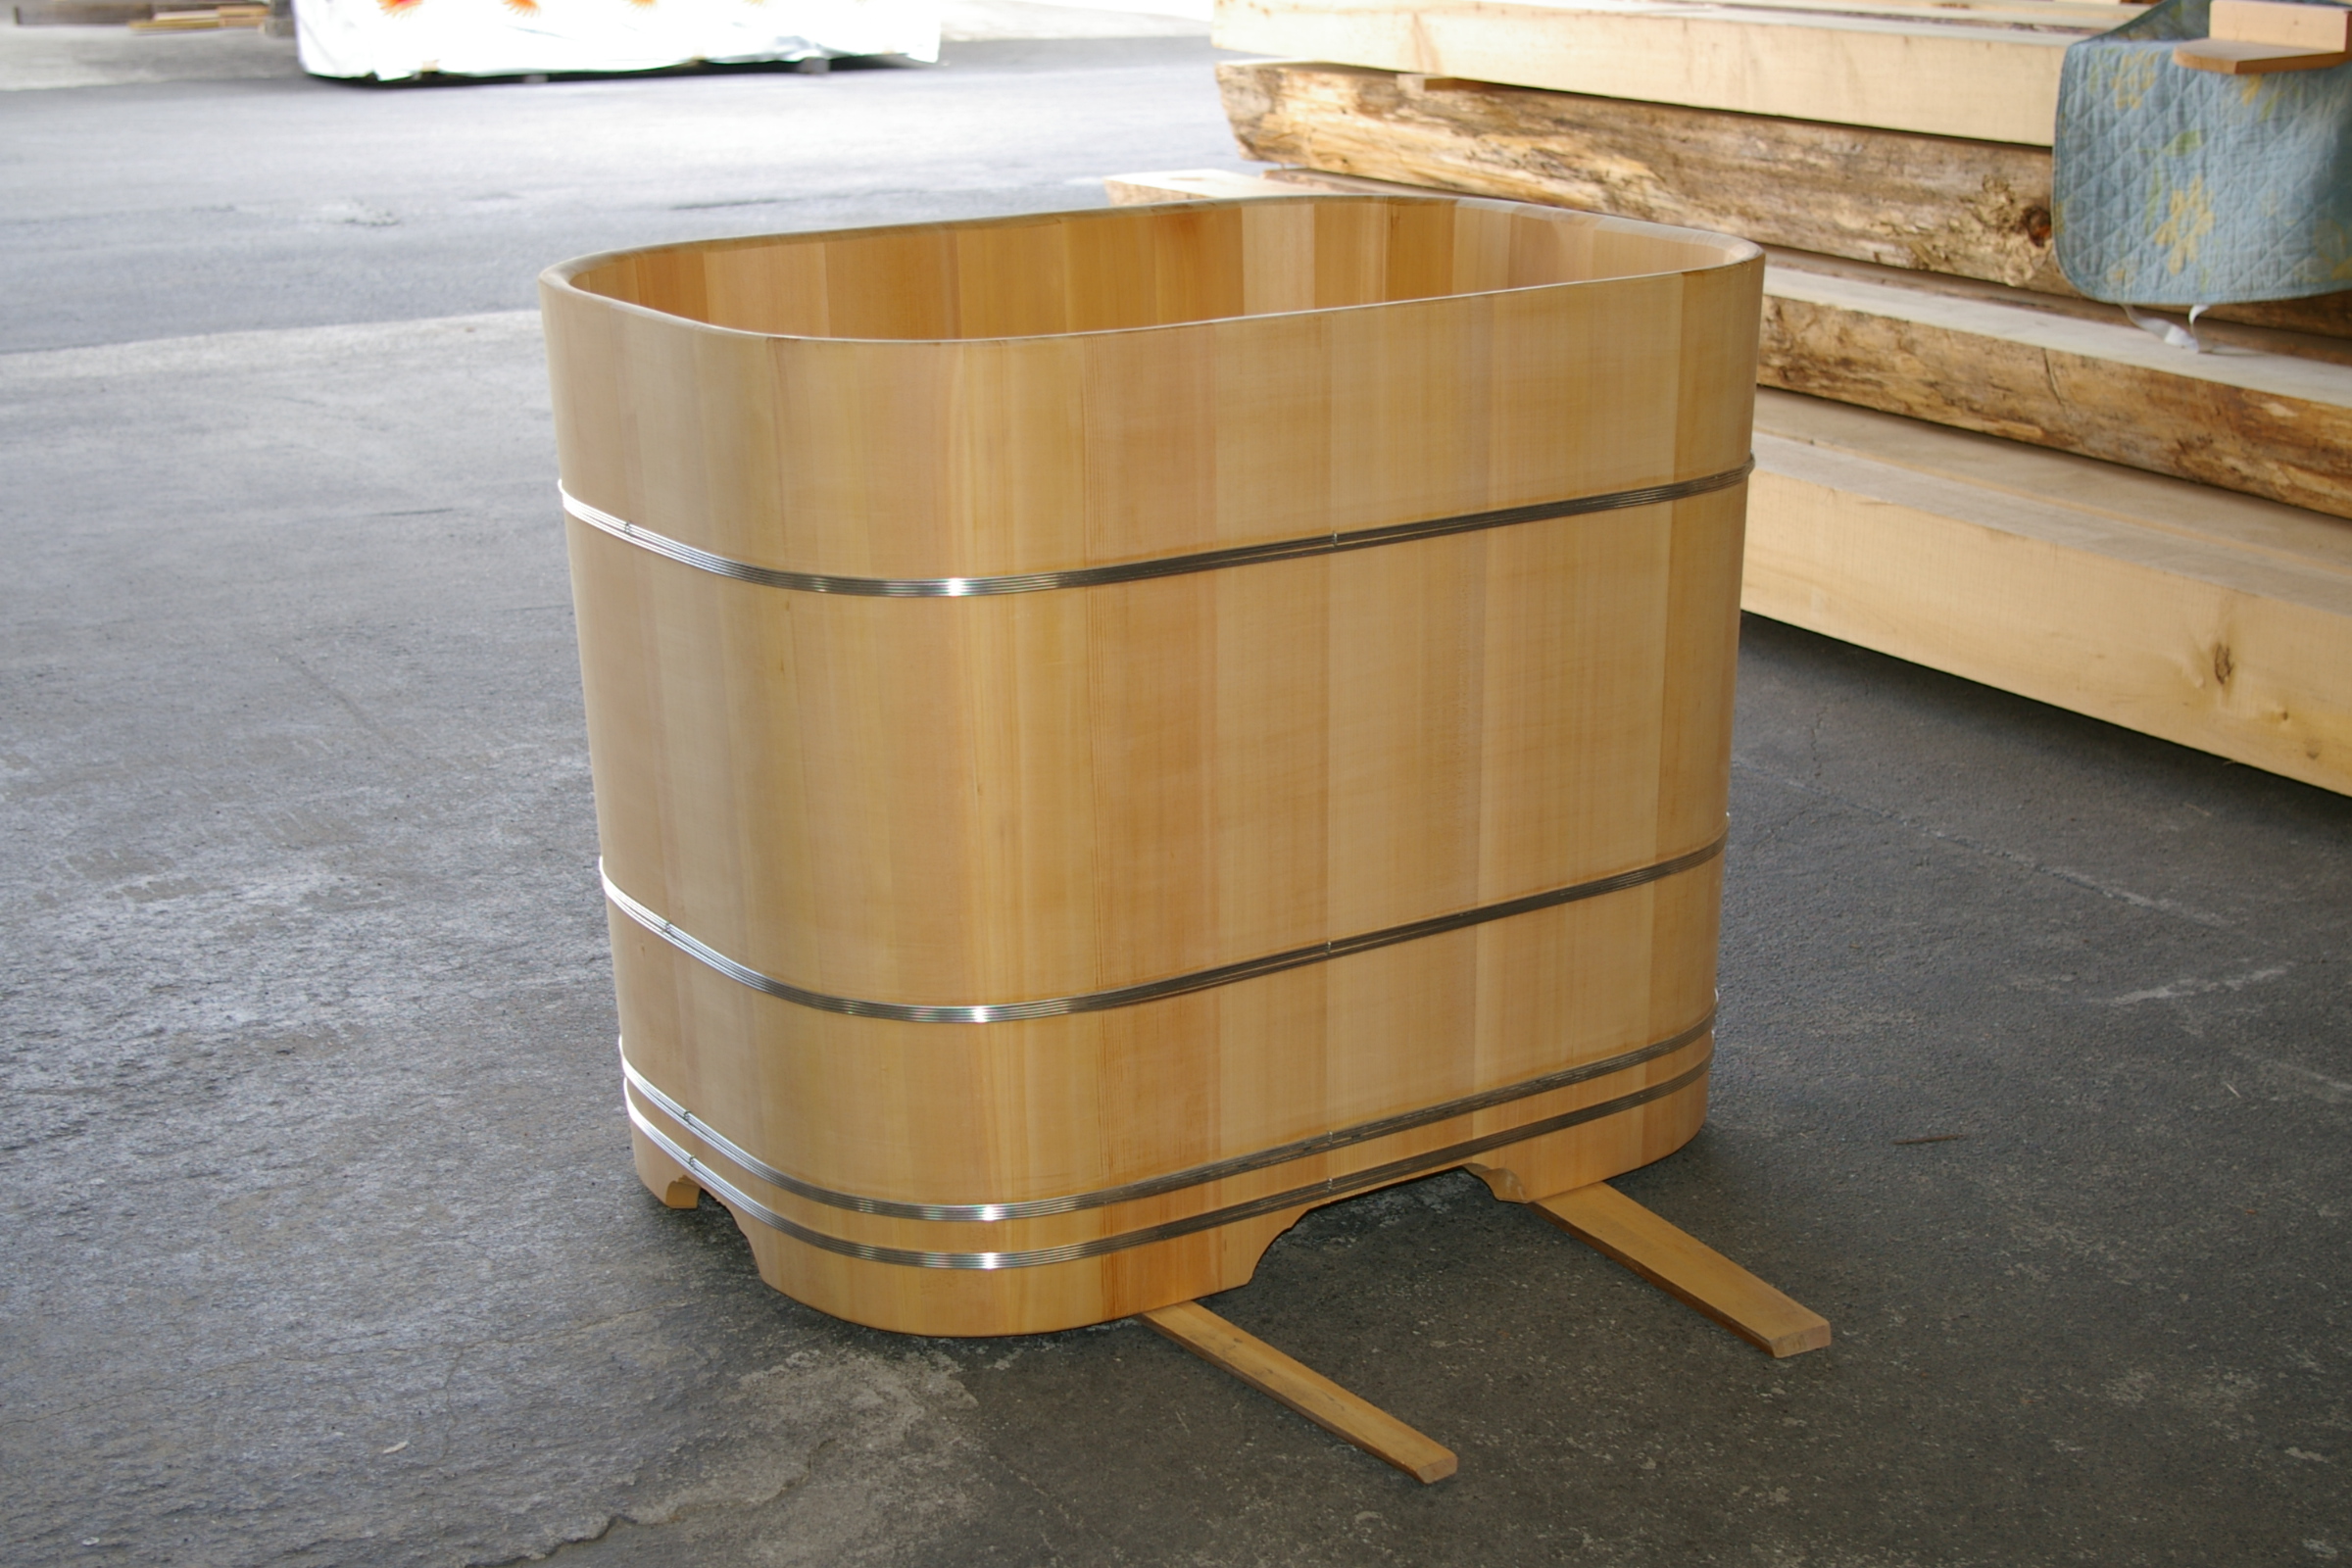 木曽サワラ角丸桶浴槽 - 天然木曽檜、檜風呂、彫刻材・能面材販売 東京 